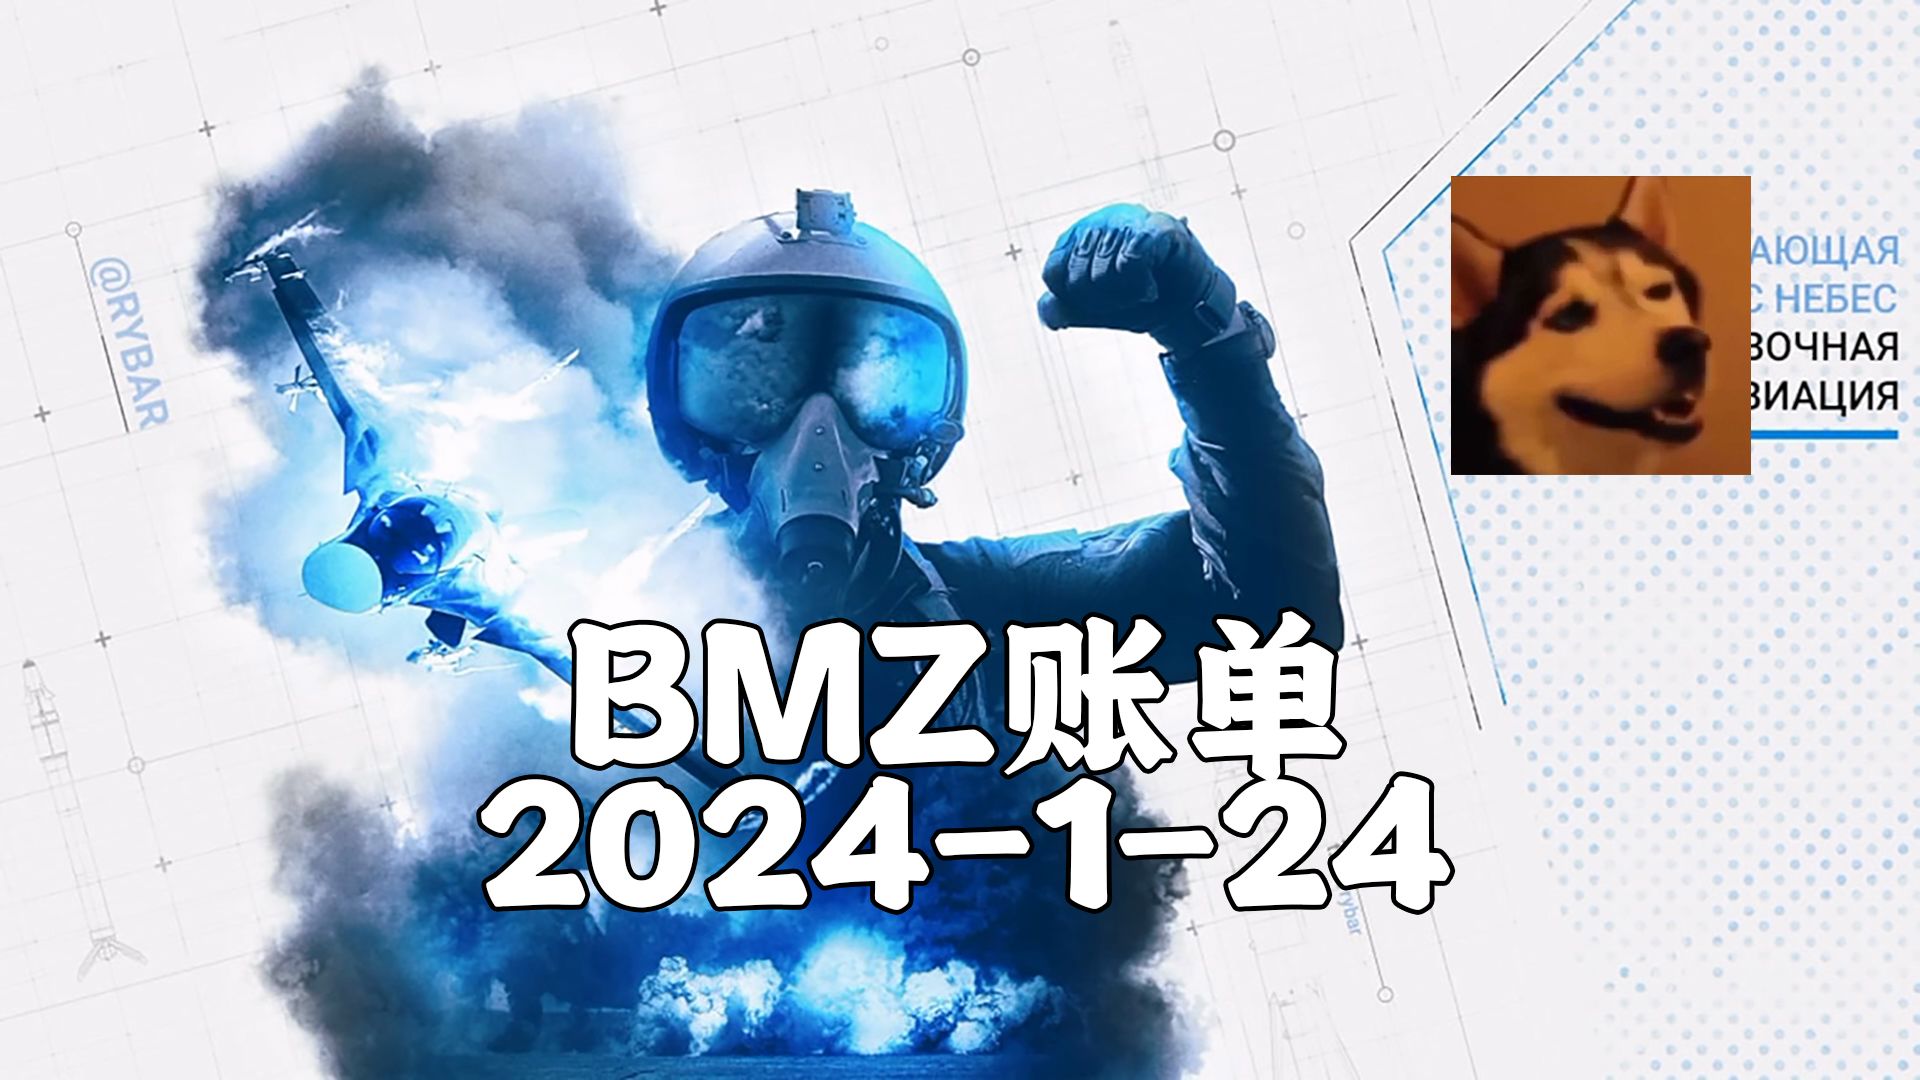 【BMZ账单】2024-1-24抵抗系2台经济频道 去无声